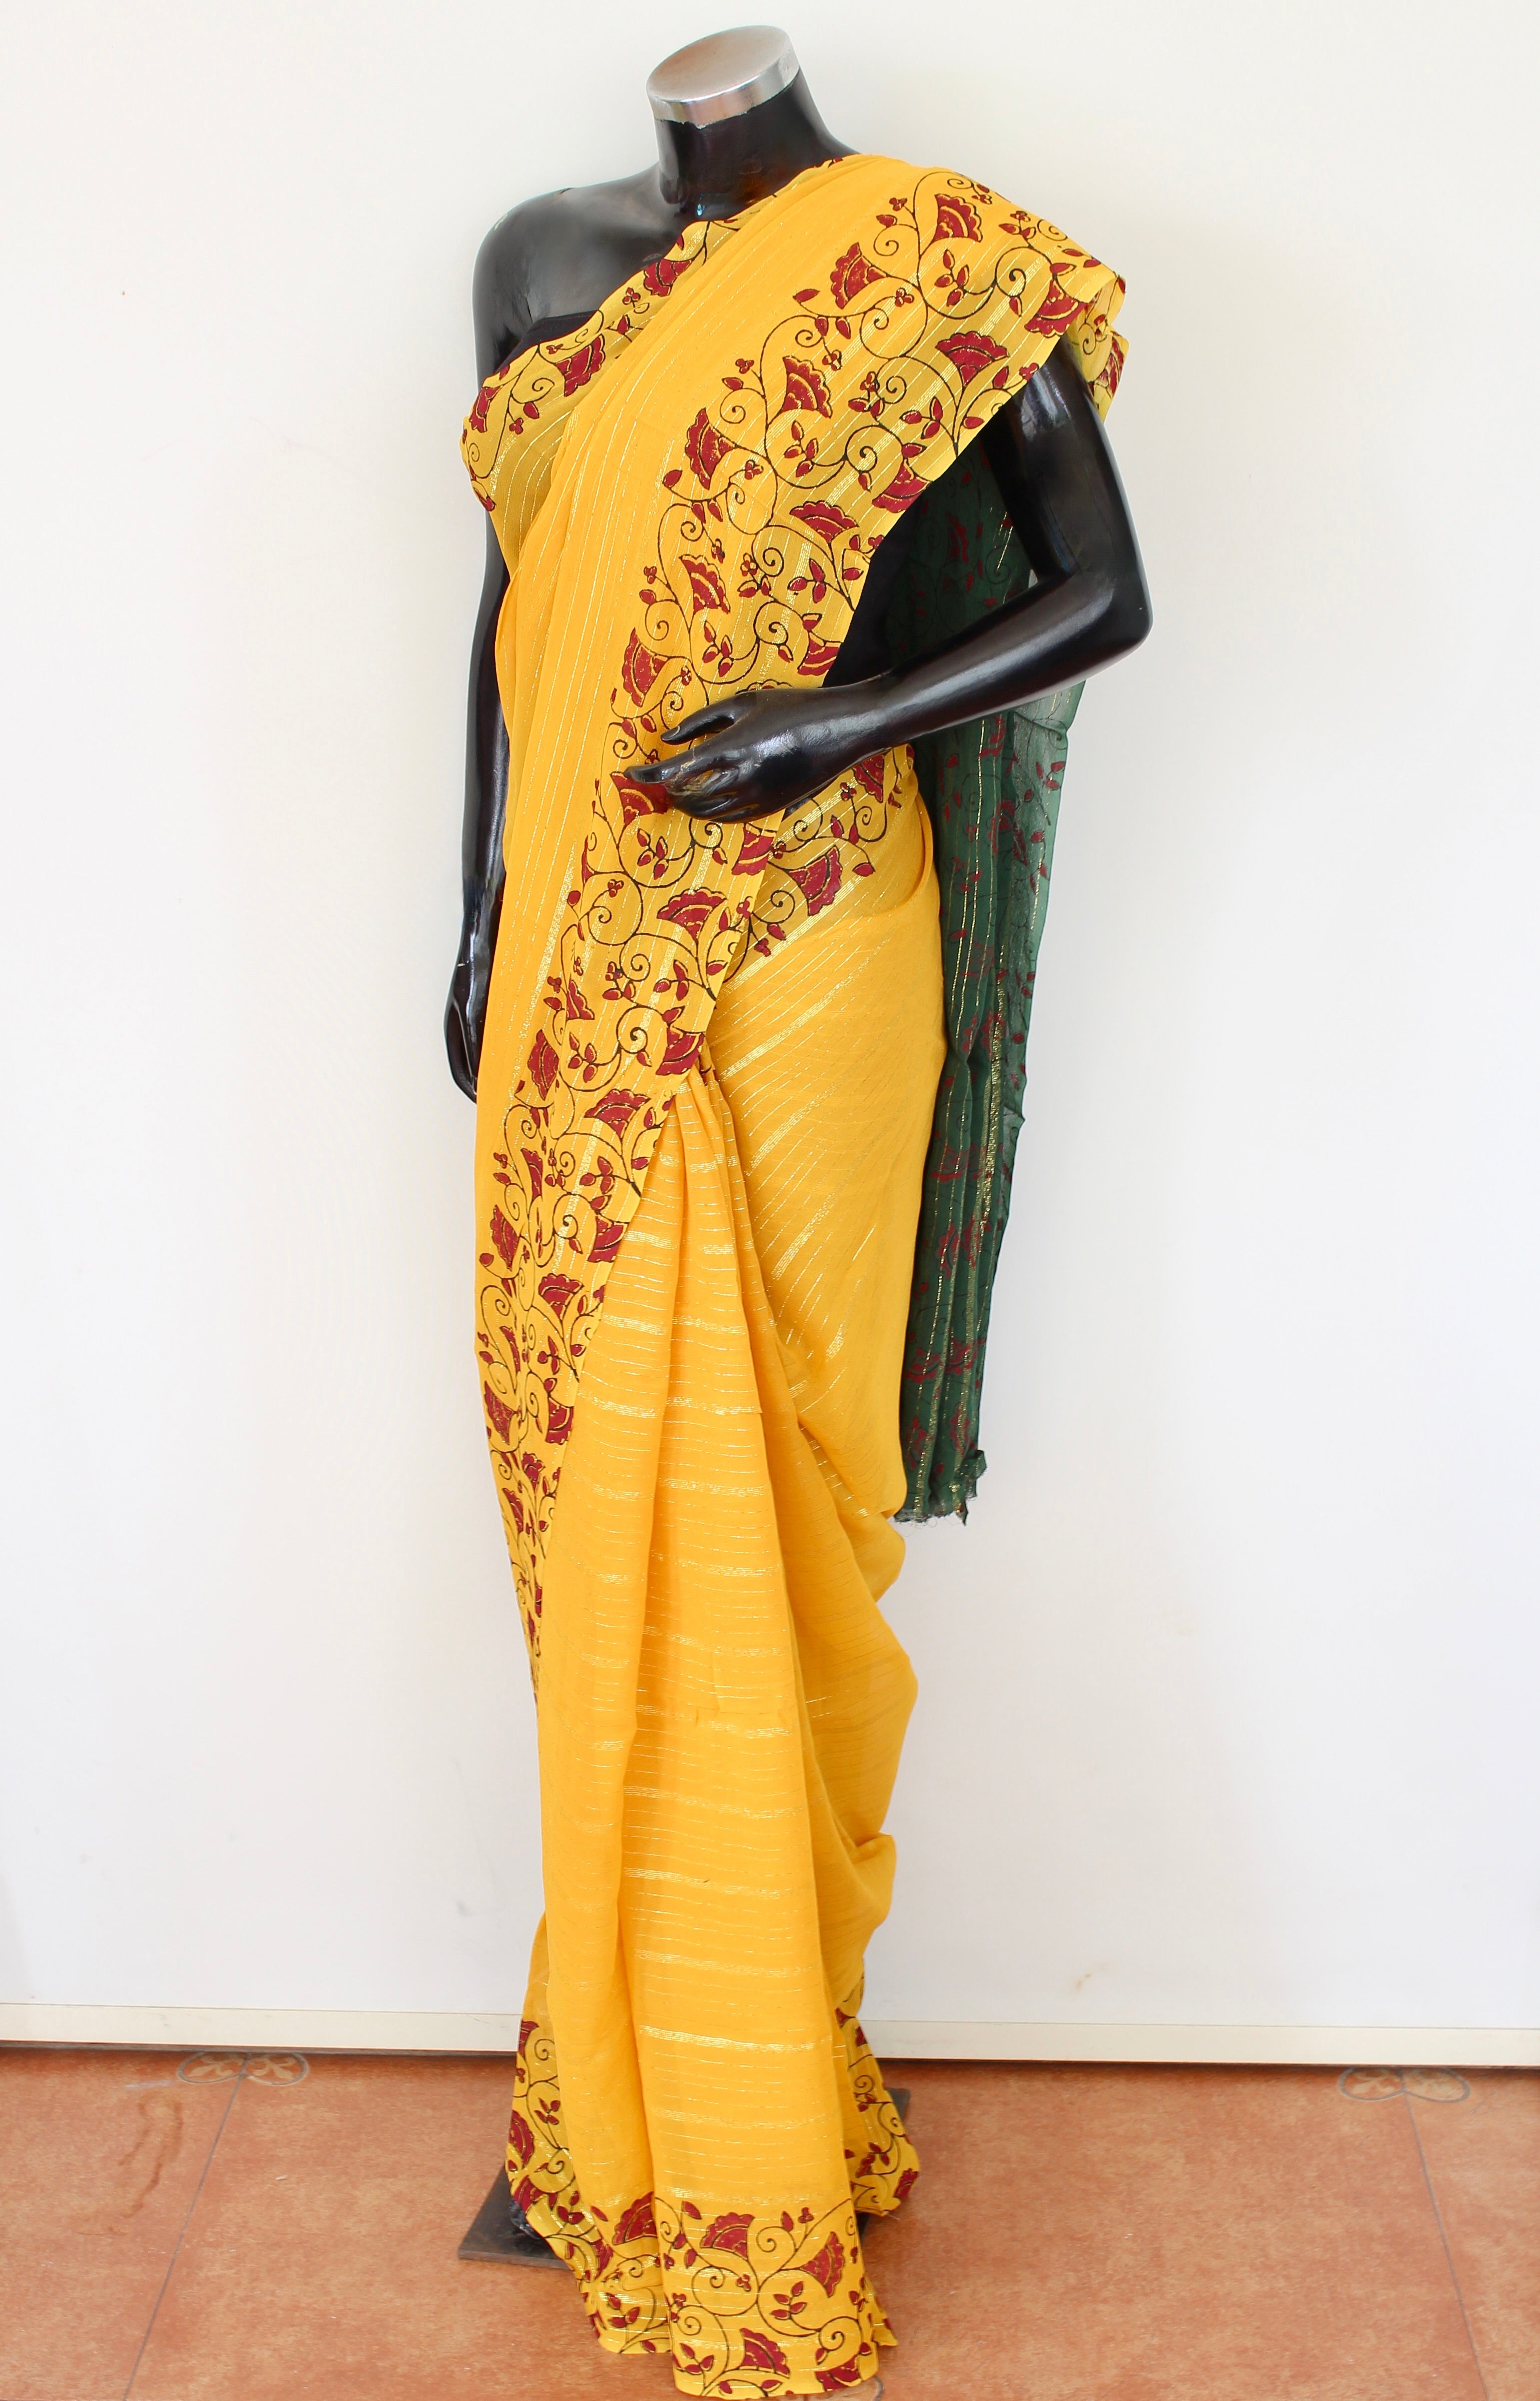 Georgette block print sari